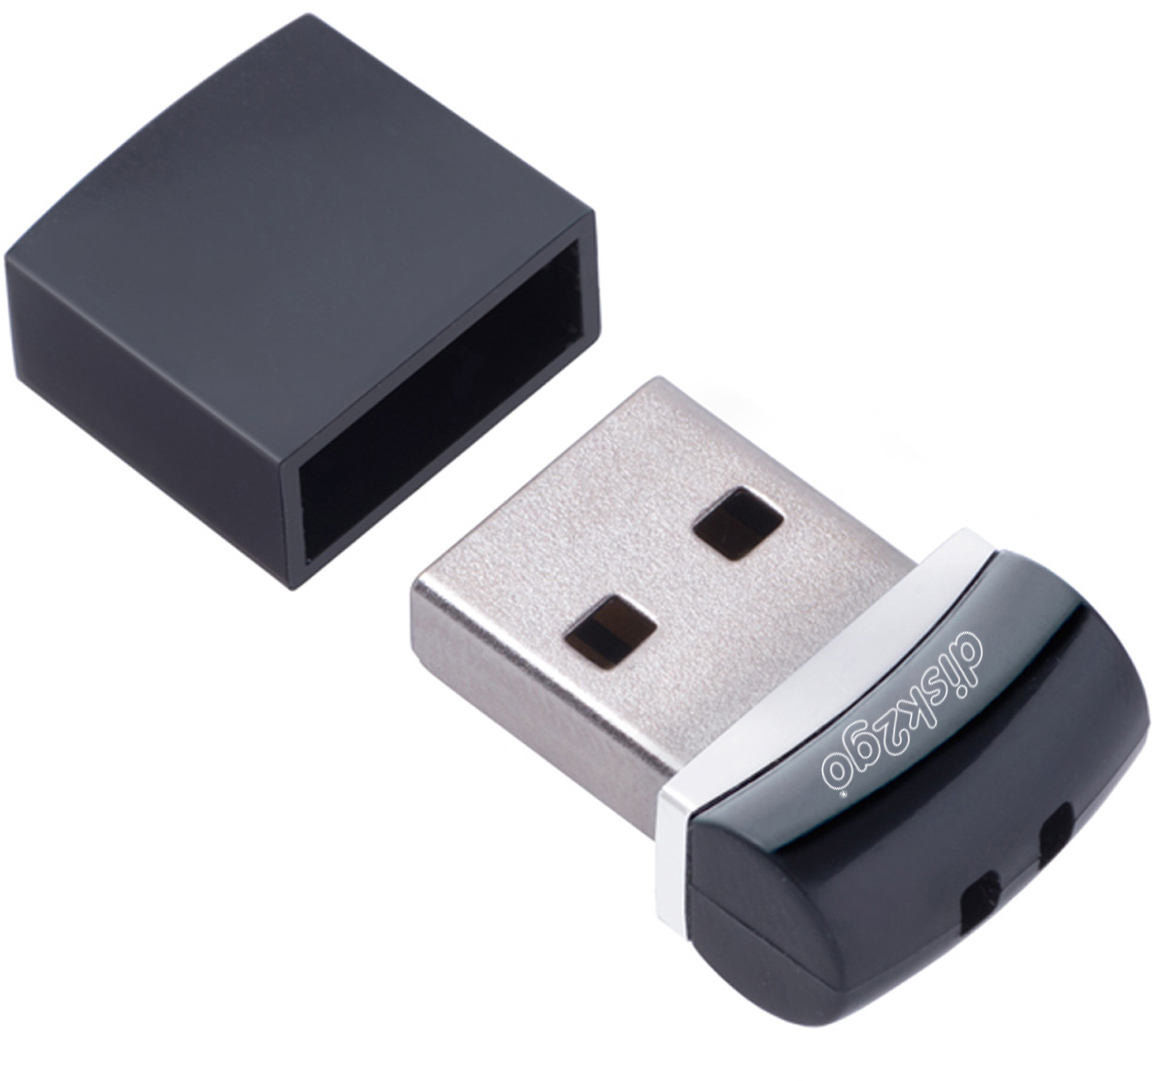 DISK2GO USB-Stick nano edge 3.0 64GB 30006682 USB 3.0